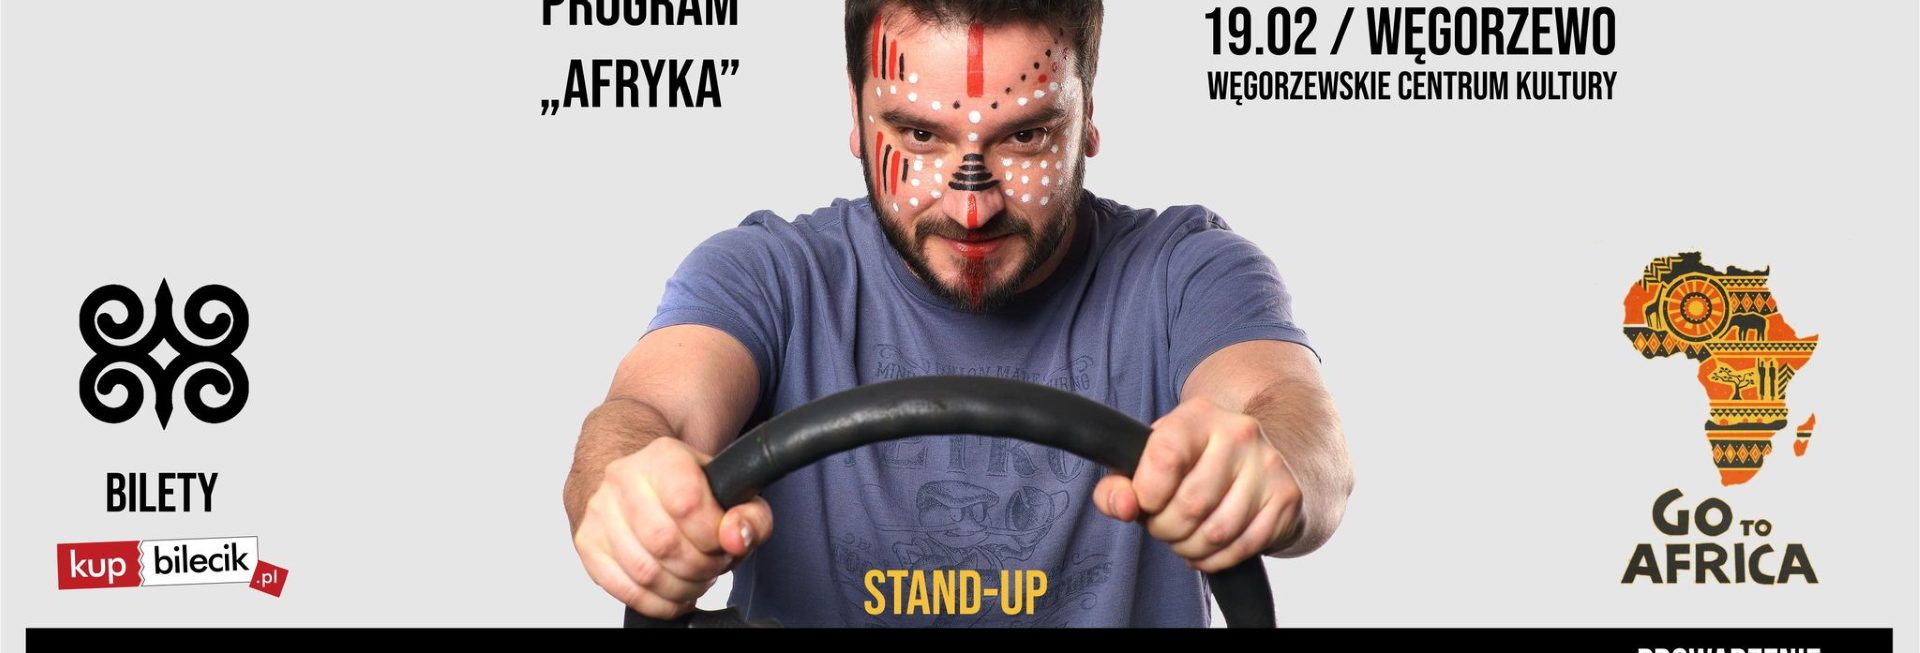 Plakat graficzny zapraszający do Węgorzewa na występ Stand-up Karol Modzelewski Węgorzewo 2022.